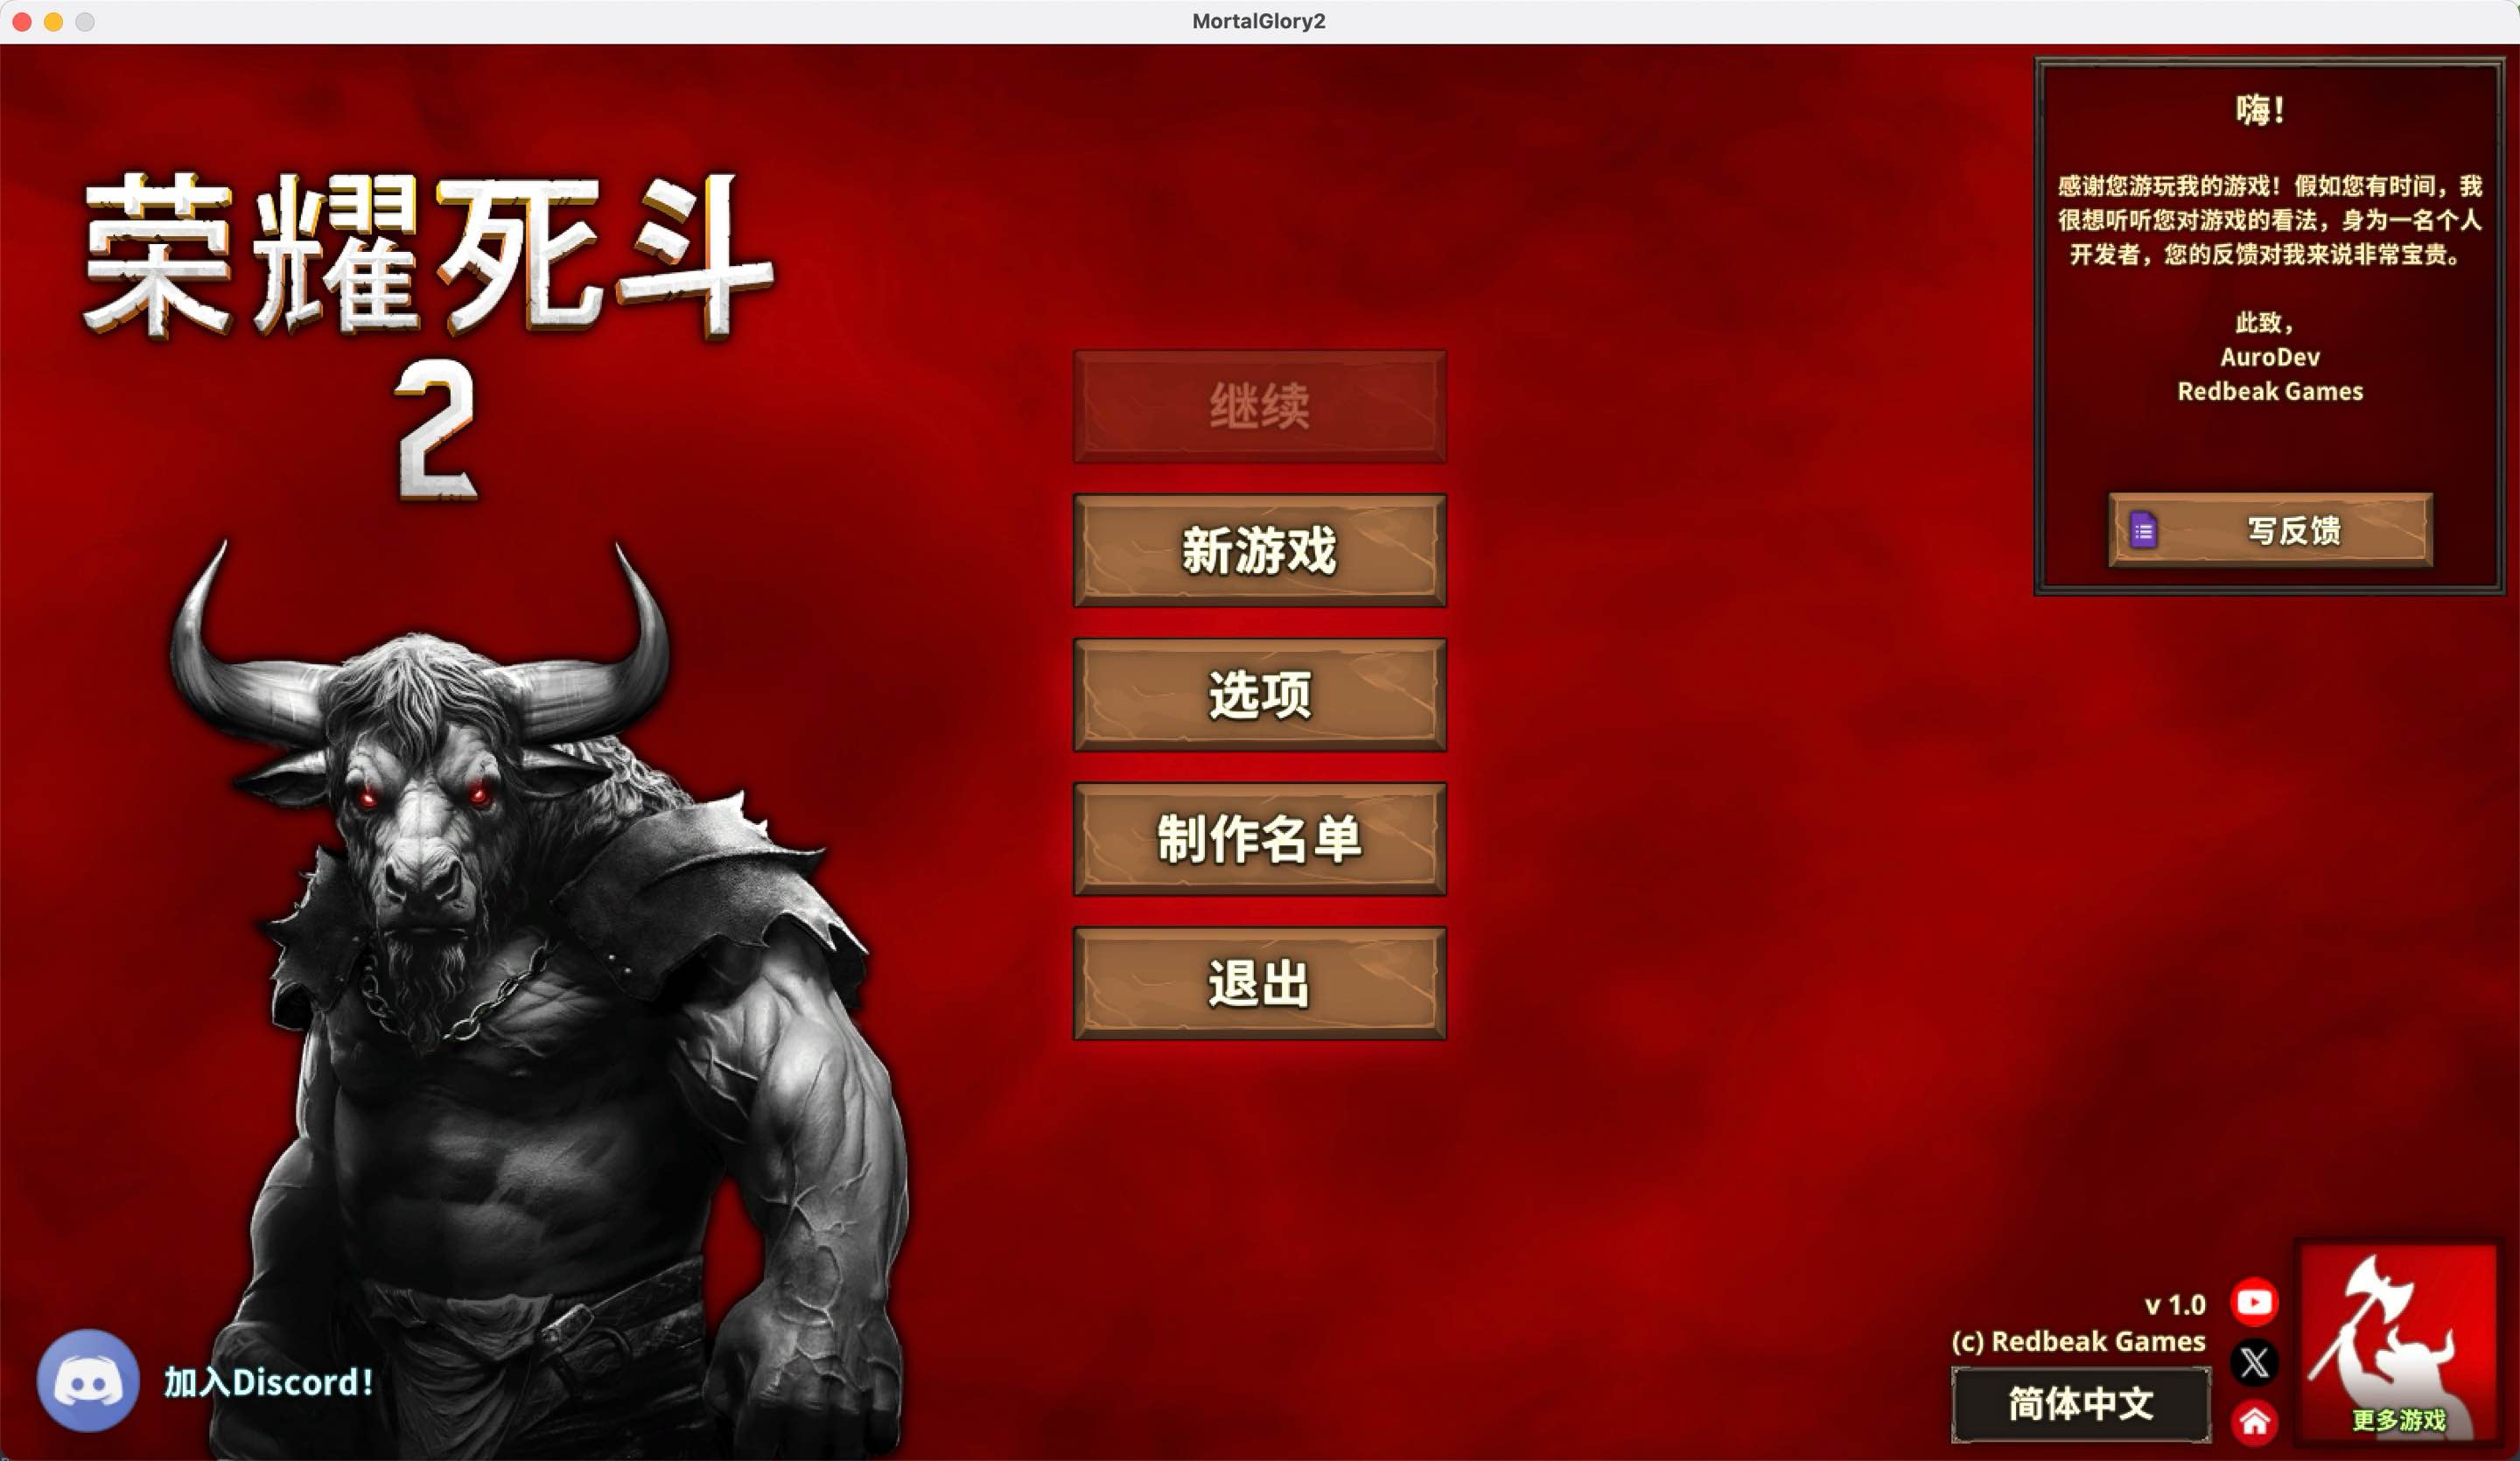 荣耀死斗2 for Mac Mortal Glory 2 v1.0 中文移植版 苹果电脑